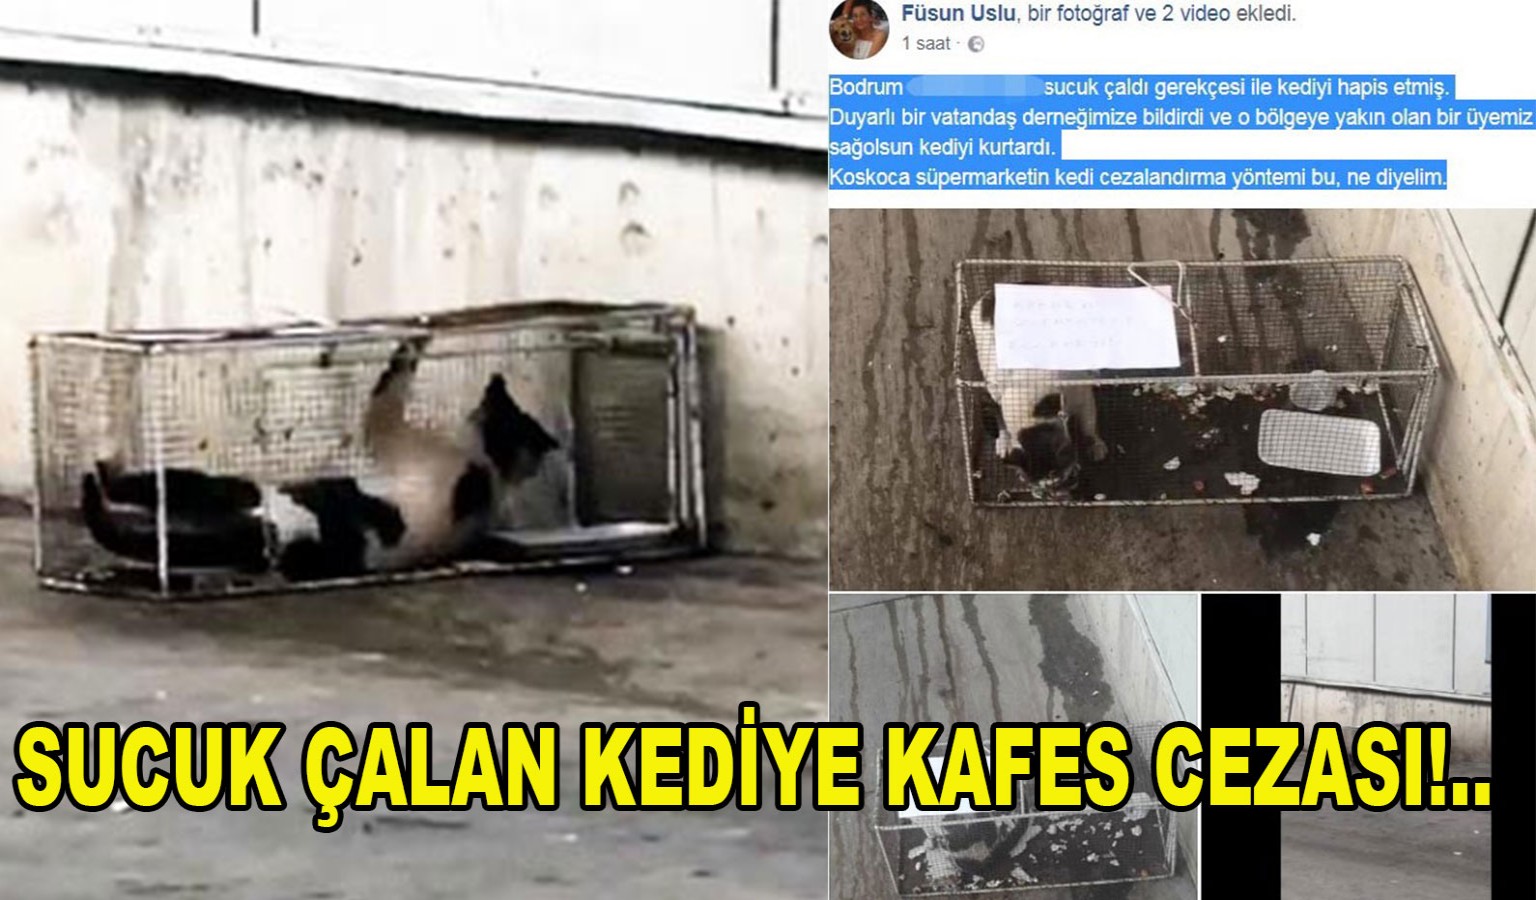 SUCUK ÇALAN KEDİYE KAFES CEZASI!..